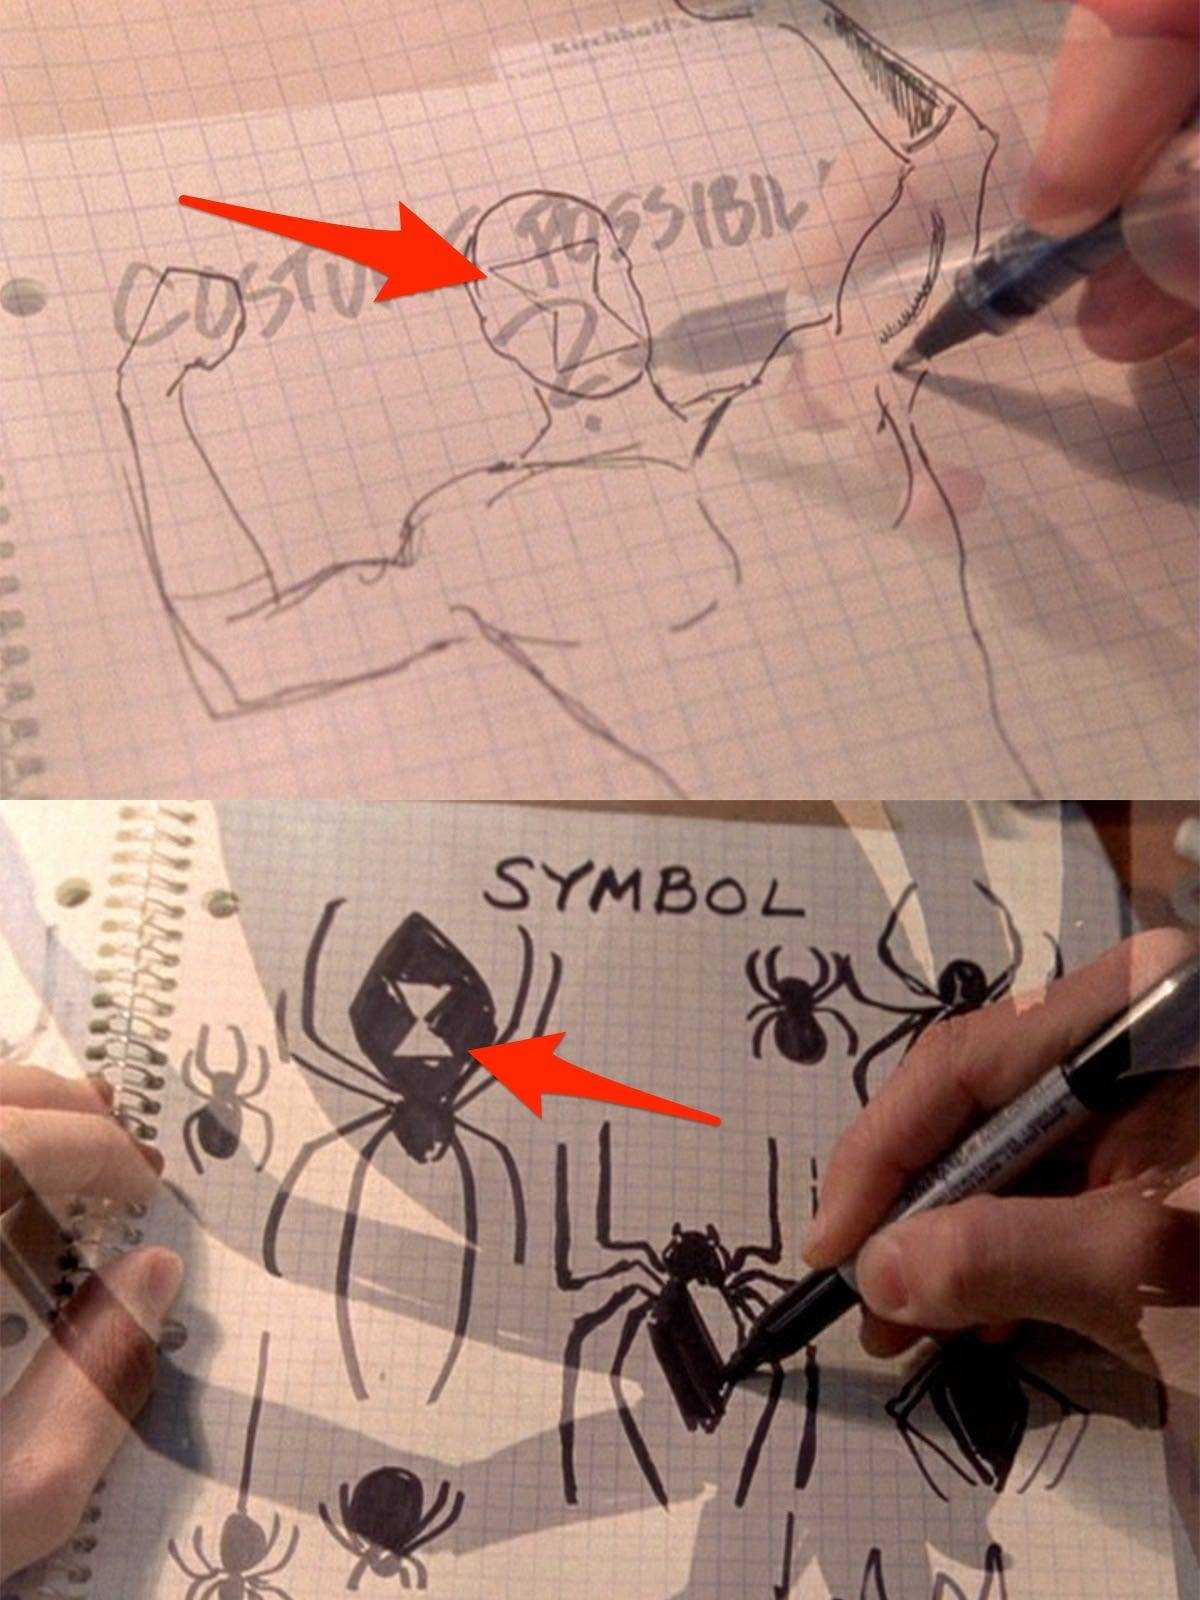 Skizzen für Spider-Man-Kostümideen, die in einem Notizbuch in 